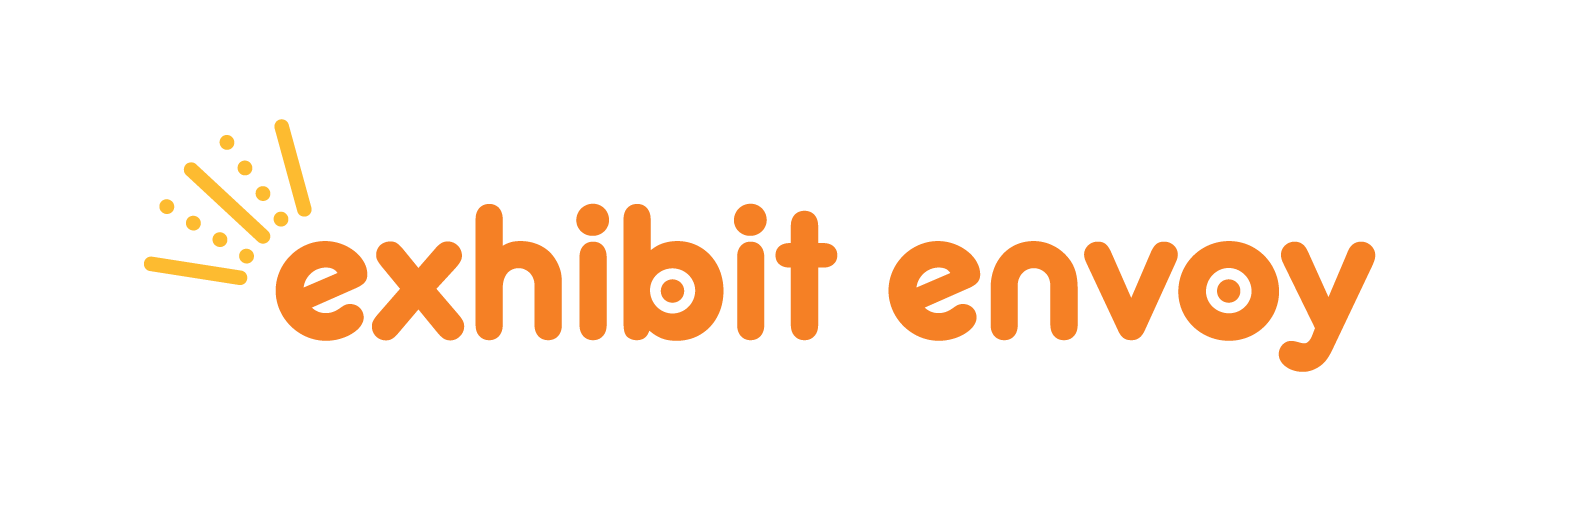 logo for exhibit envoy